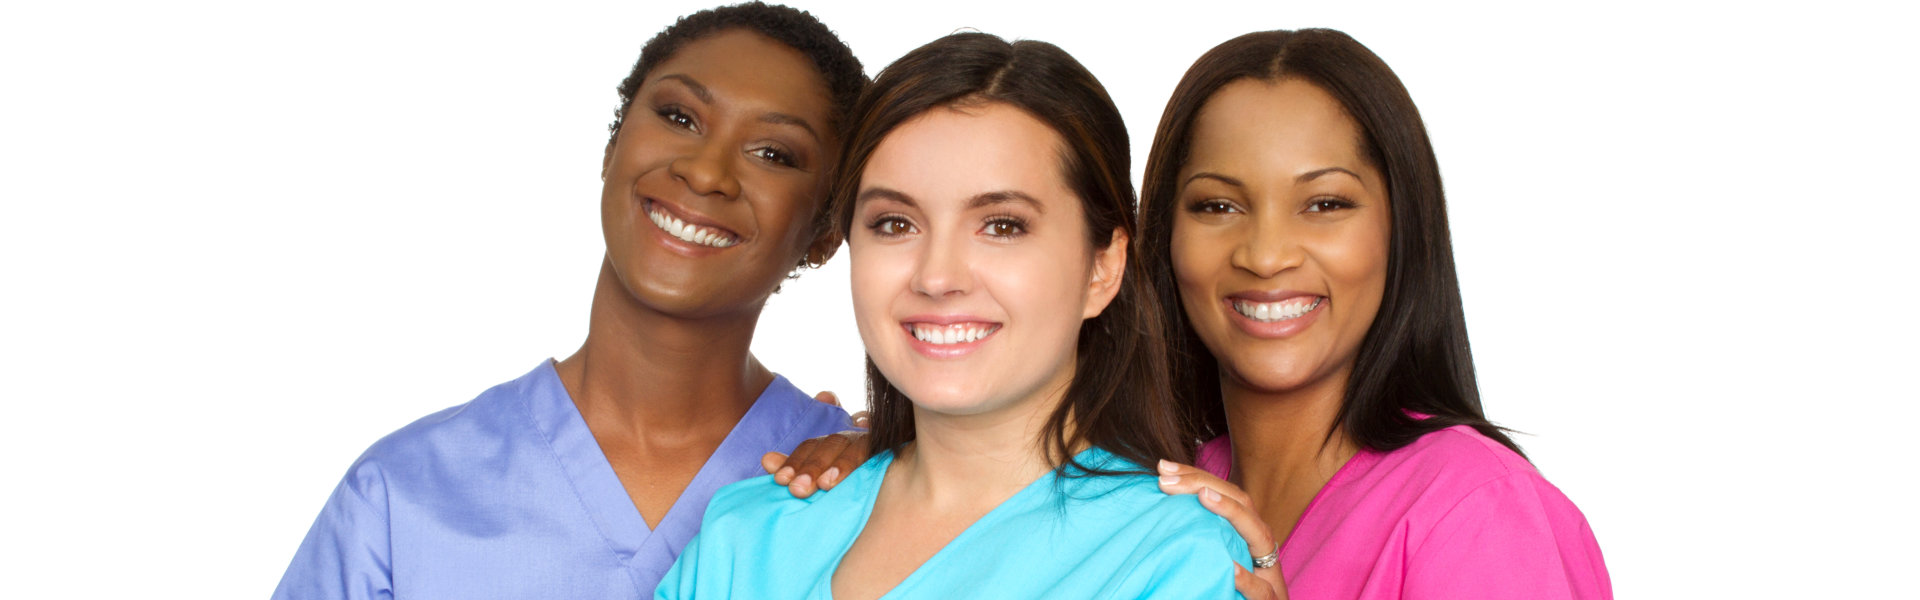 three nurses smiling and looking at the camera